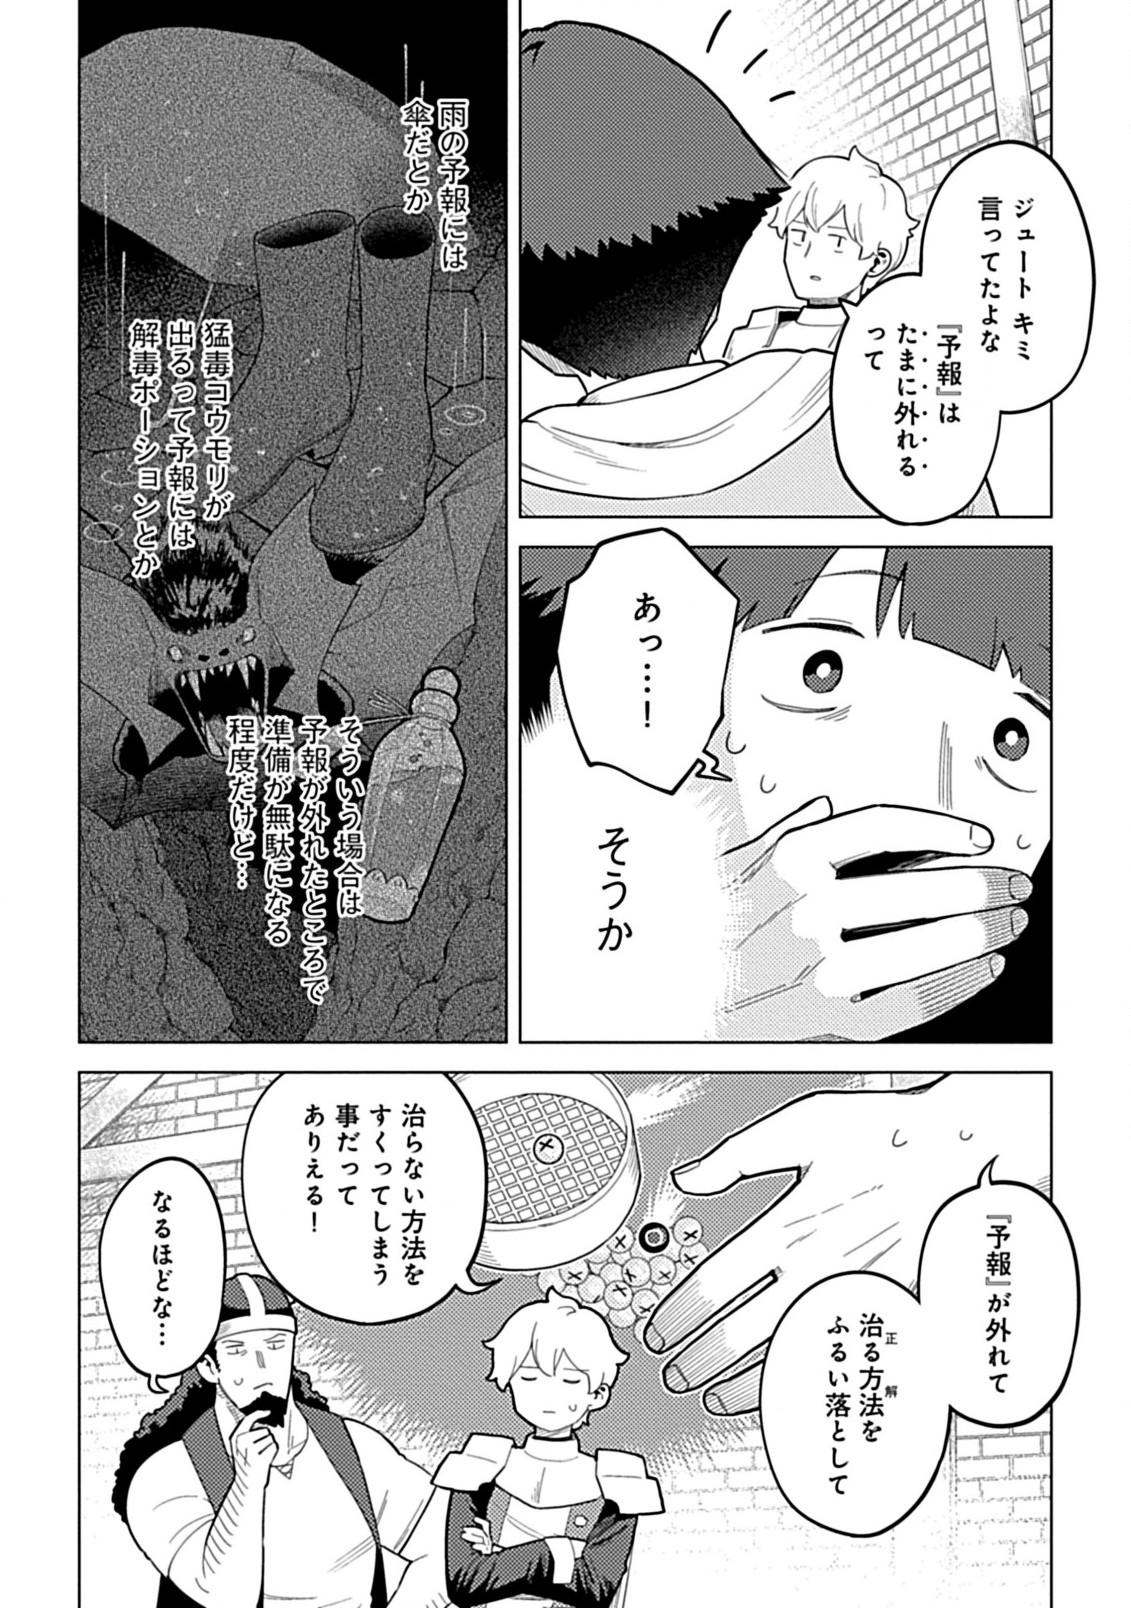 Hazure Skill Yohou ga Shinka Shite Ittara Jitsugen ni Naru Ken Renga Renga Renga! de Slow Life Shitemasu - Chapter 3.1 - Page 10